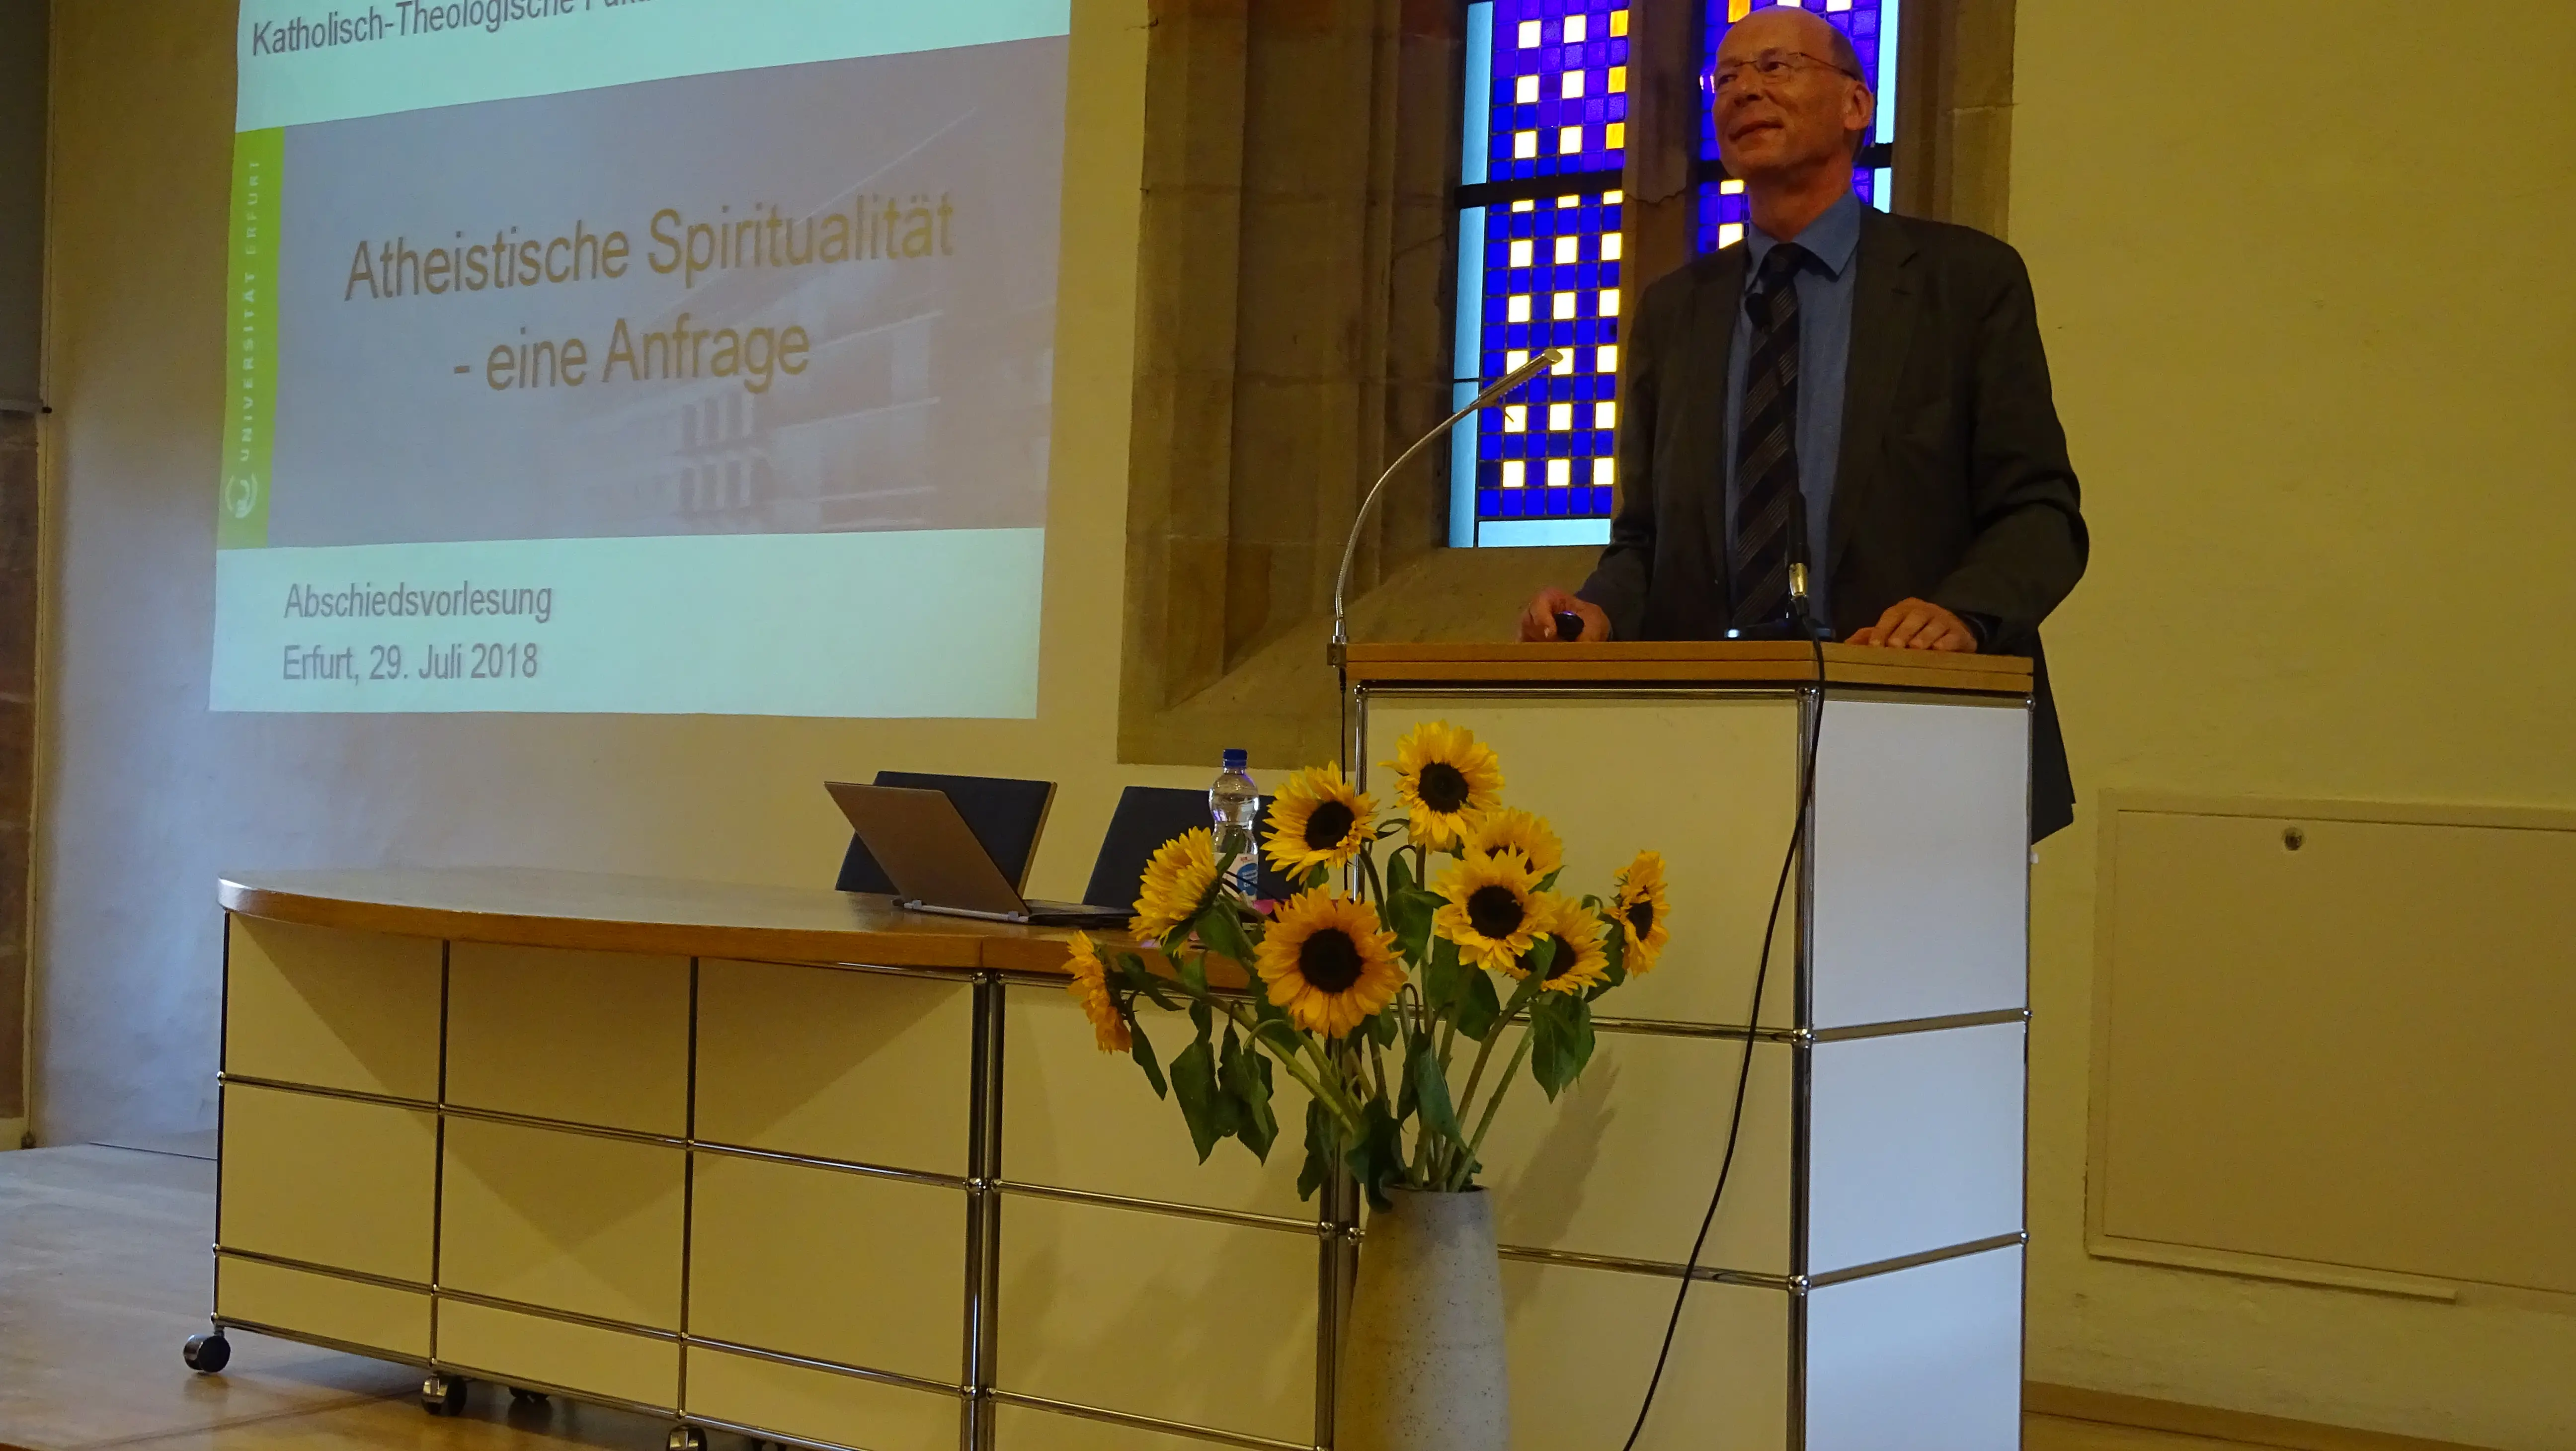 Prof. Dr. Eberhard Tiefensee am Rednerpult während seiner Abschiedsvorlesung mit Präsentationsfläche "Atheistische Spiritualität - eine Anfrage"